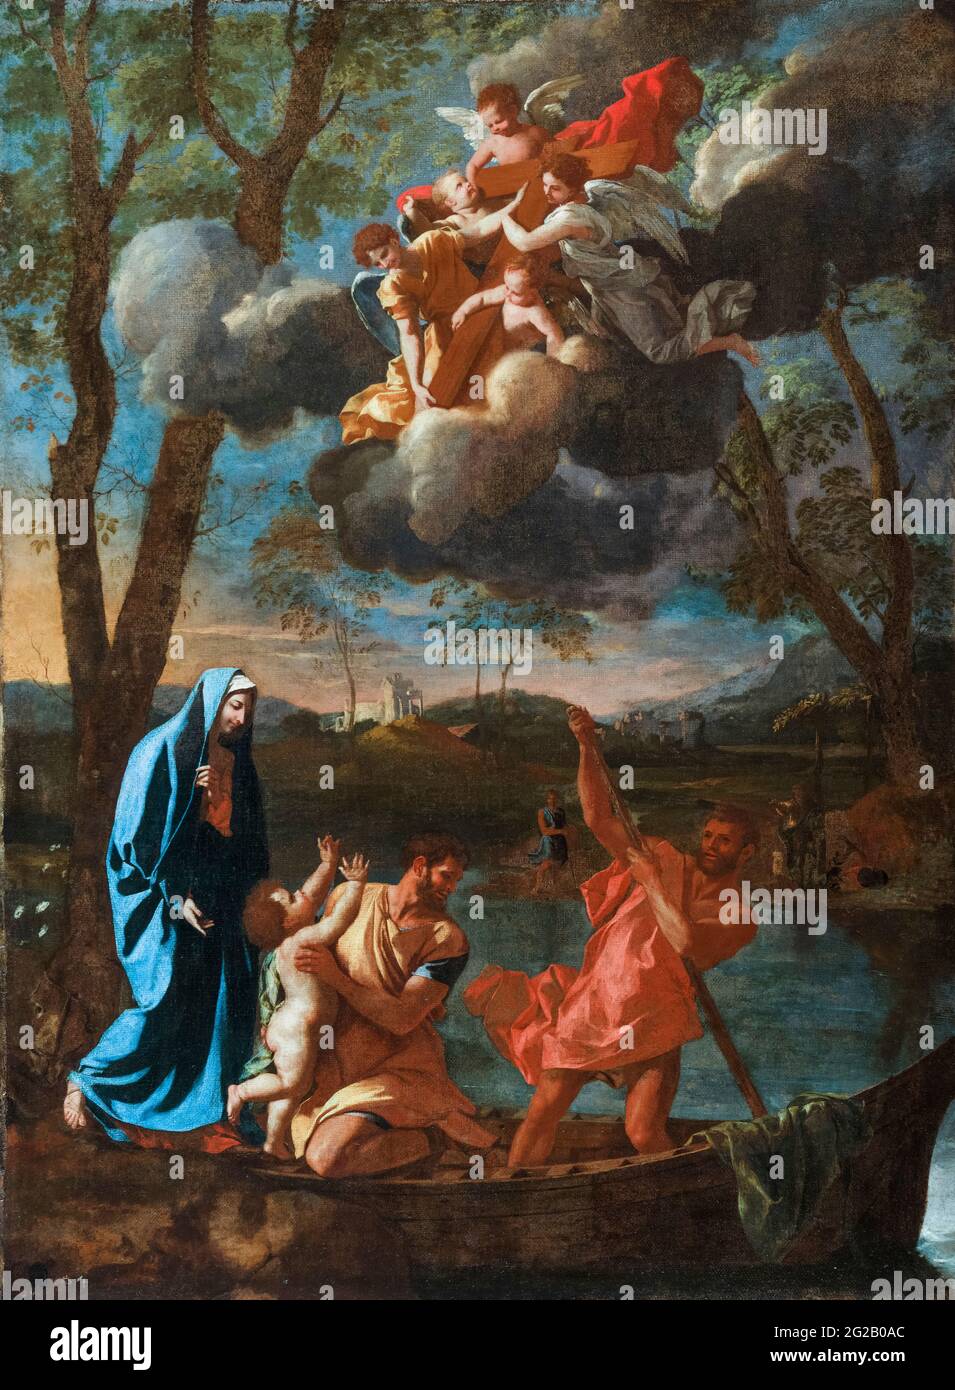 Le retour de la Sainte famille à Nazareth, peinture de Nicolas Poussin, vers 1627 Banque D'Images